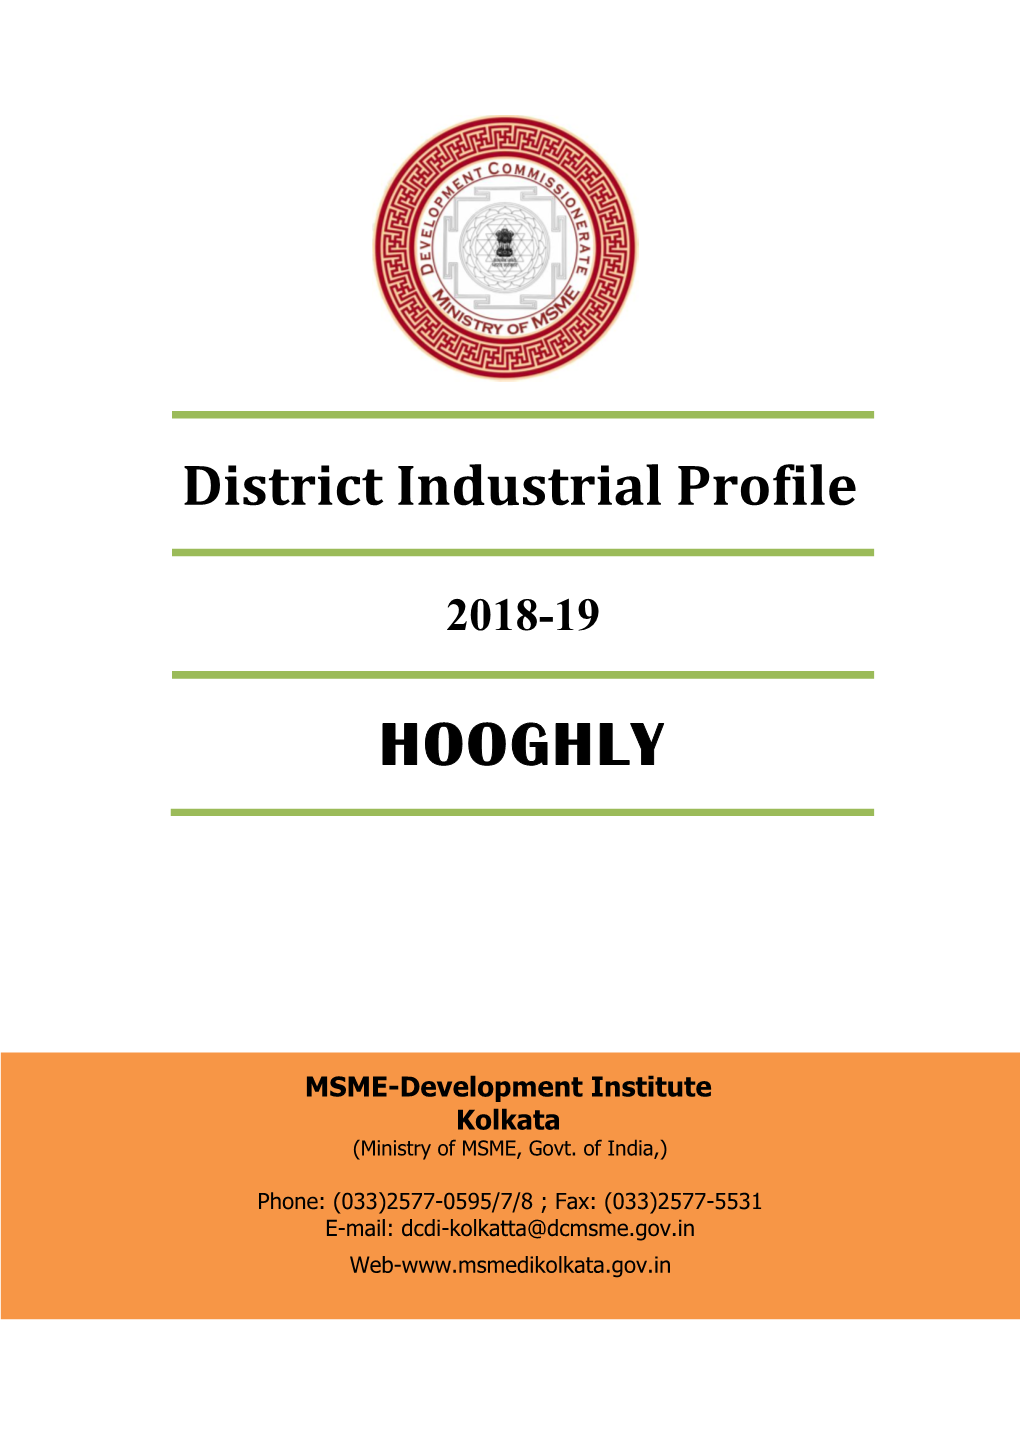 DIPS-Hooghly-2018-19.Pdf